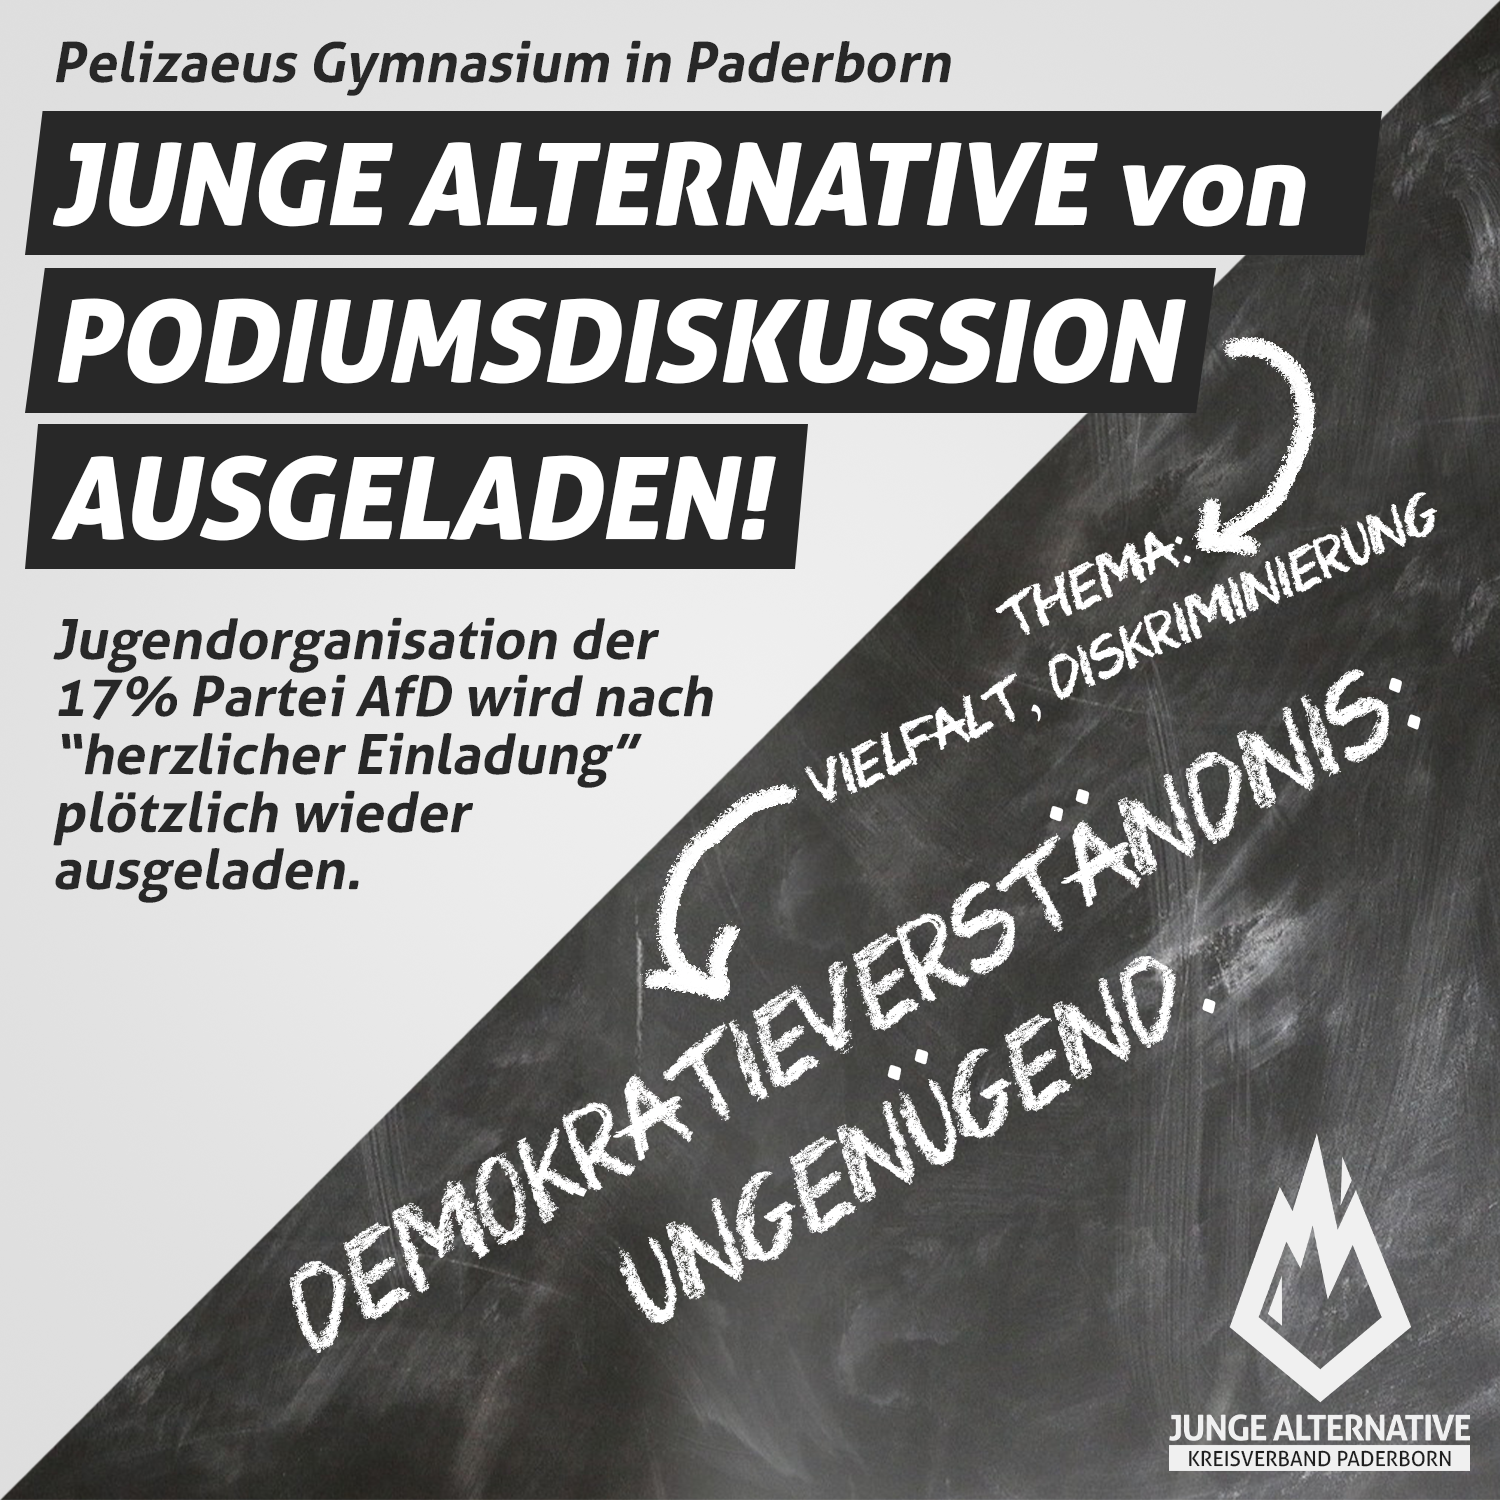 You are currently viewing JA Paderborn von Diskussion an Pelizaeus Gymnasium ausgeladen!